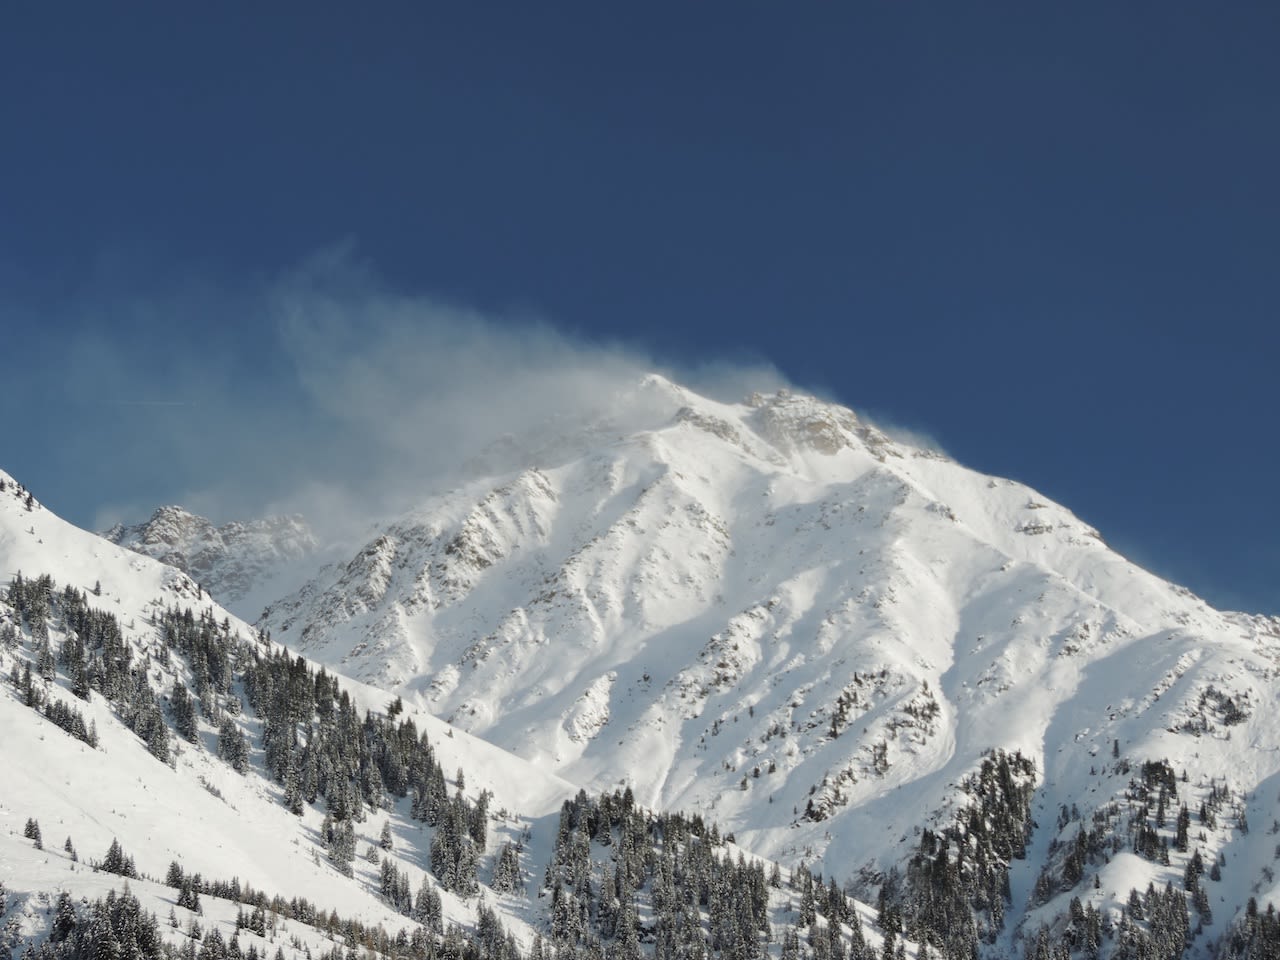 Wanneer de sneeuw op deze manier van de bergkammen geblazen wordt neemt het risico's op lawines vaak flink toe. Foto: Maarten Minkman